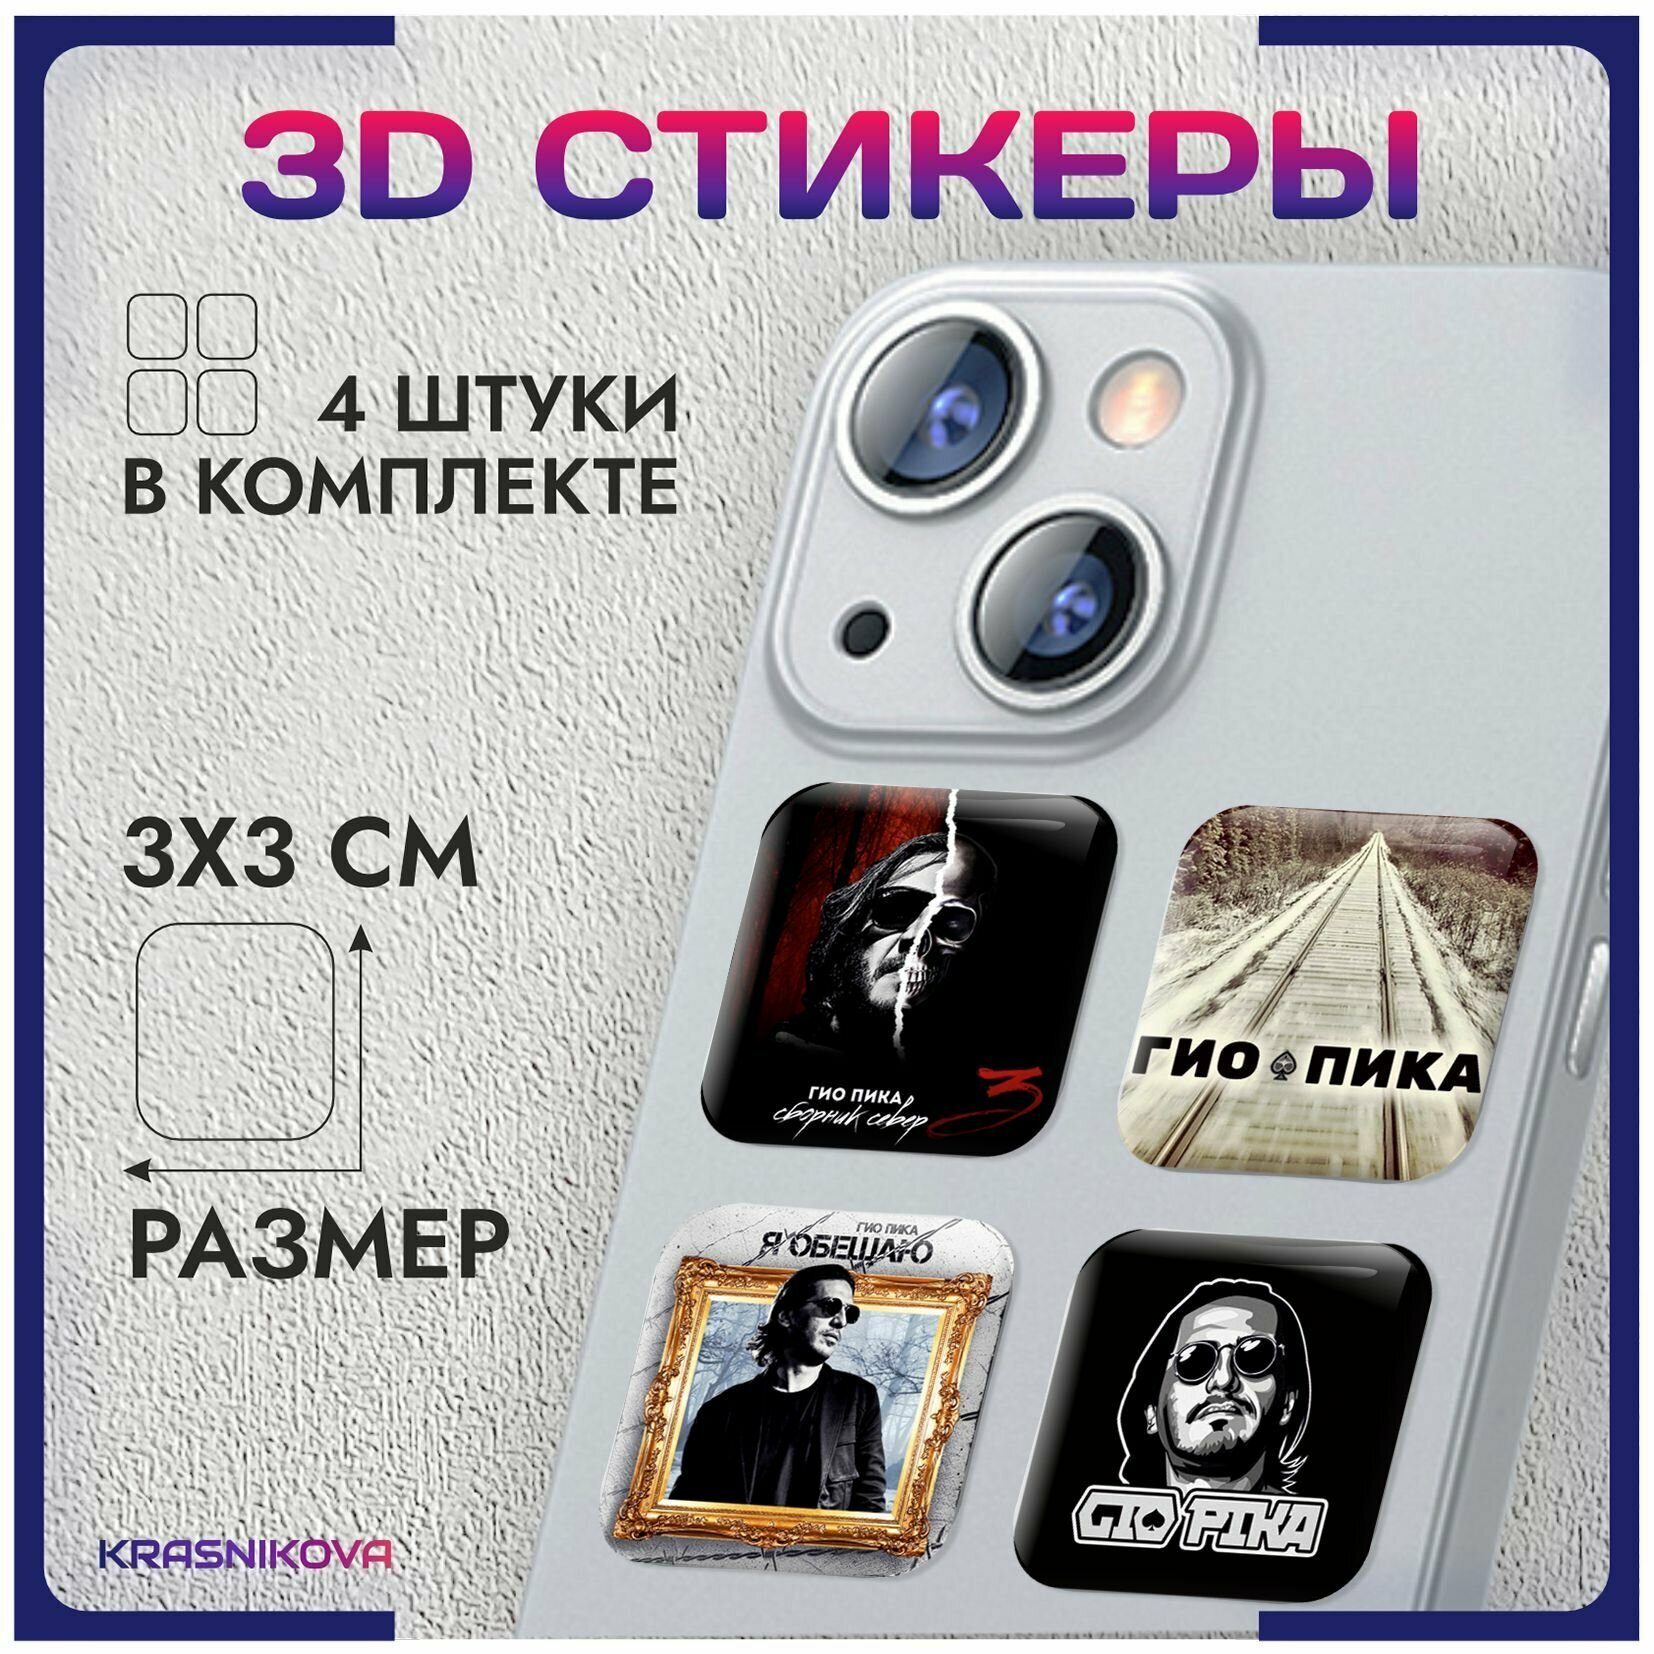 3D стикеры на телефон объемные наклейки гио пика андер v2